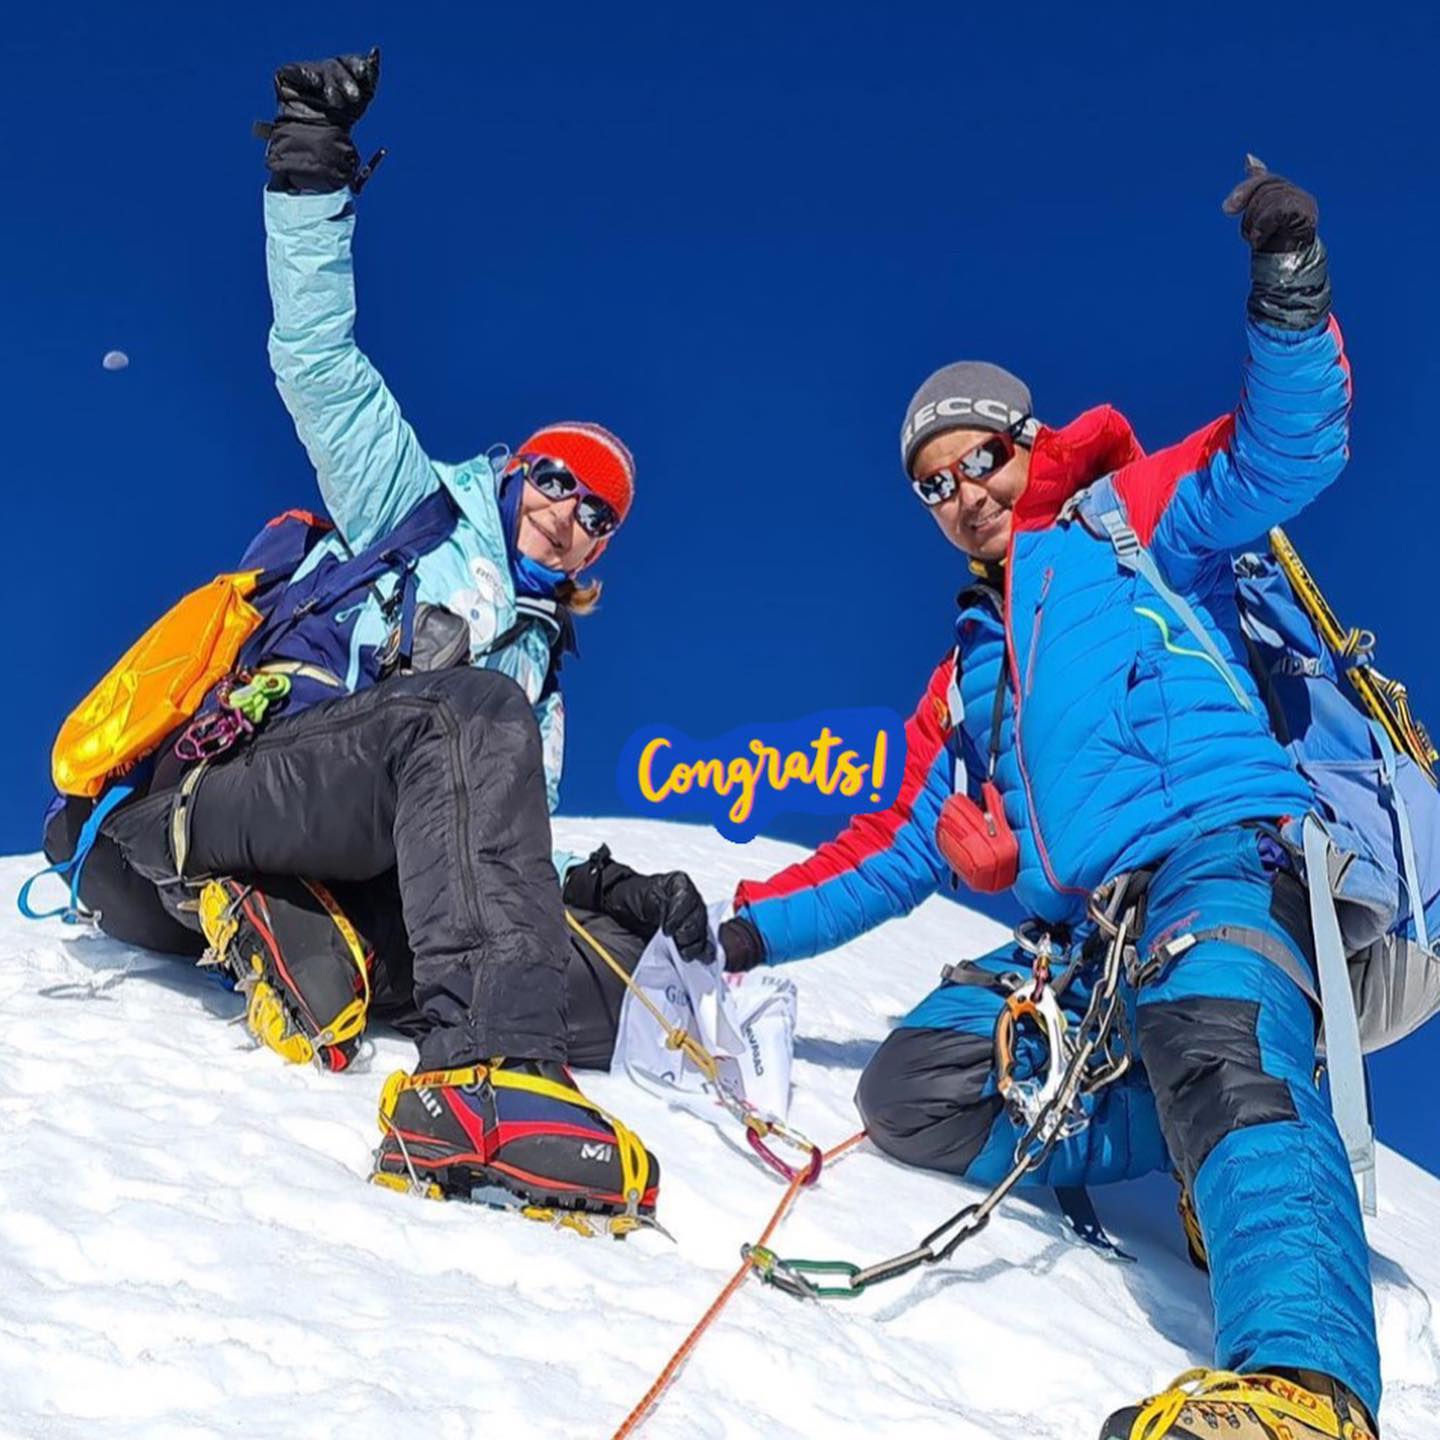 Швейцарско-непальская команда совершила первое в истории восхождение на ранее никем не покоренный пик  Куюнжа-Ри II (Kyungya Ri II) высотой 6506 метров